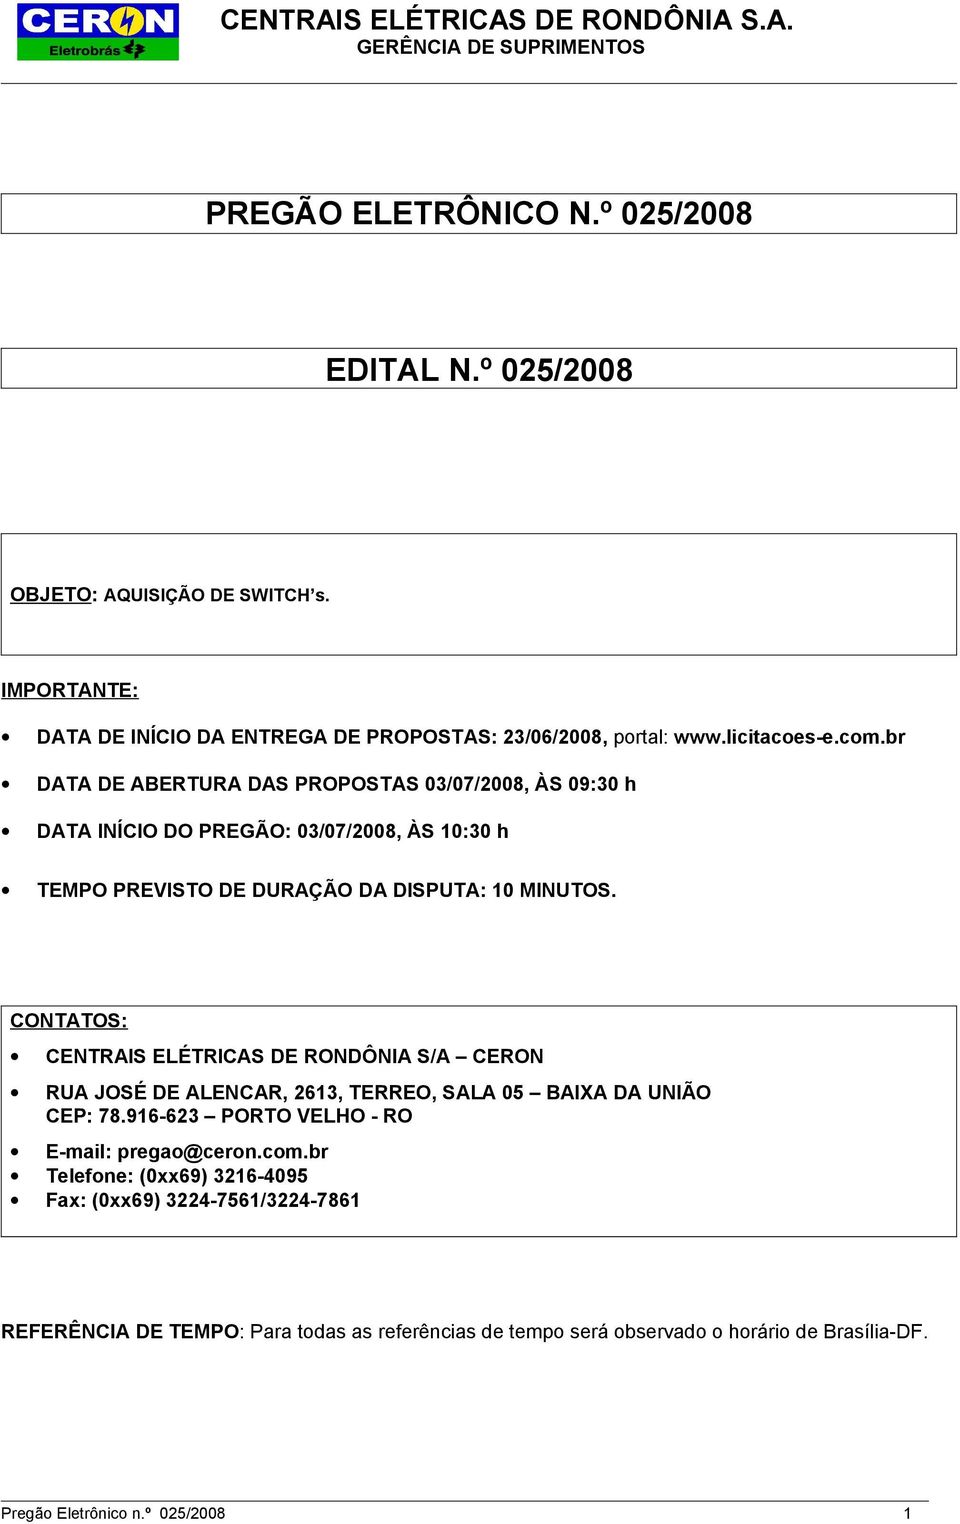 CONTATOS: CENTRAIS ELÉTRICAS DE RONDÔNIA S/A CERON RUA JOSÉ DE ALENCAR, 2613, TERREO, SALA 05 BAIXA DA UNIÃO CEP: 78.916-623 PORTO VELHO - RO E-mail: pregao@ceron.com.